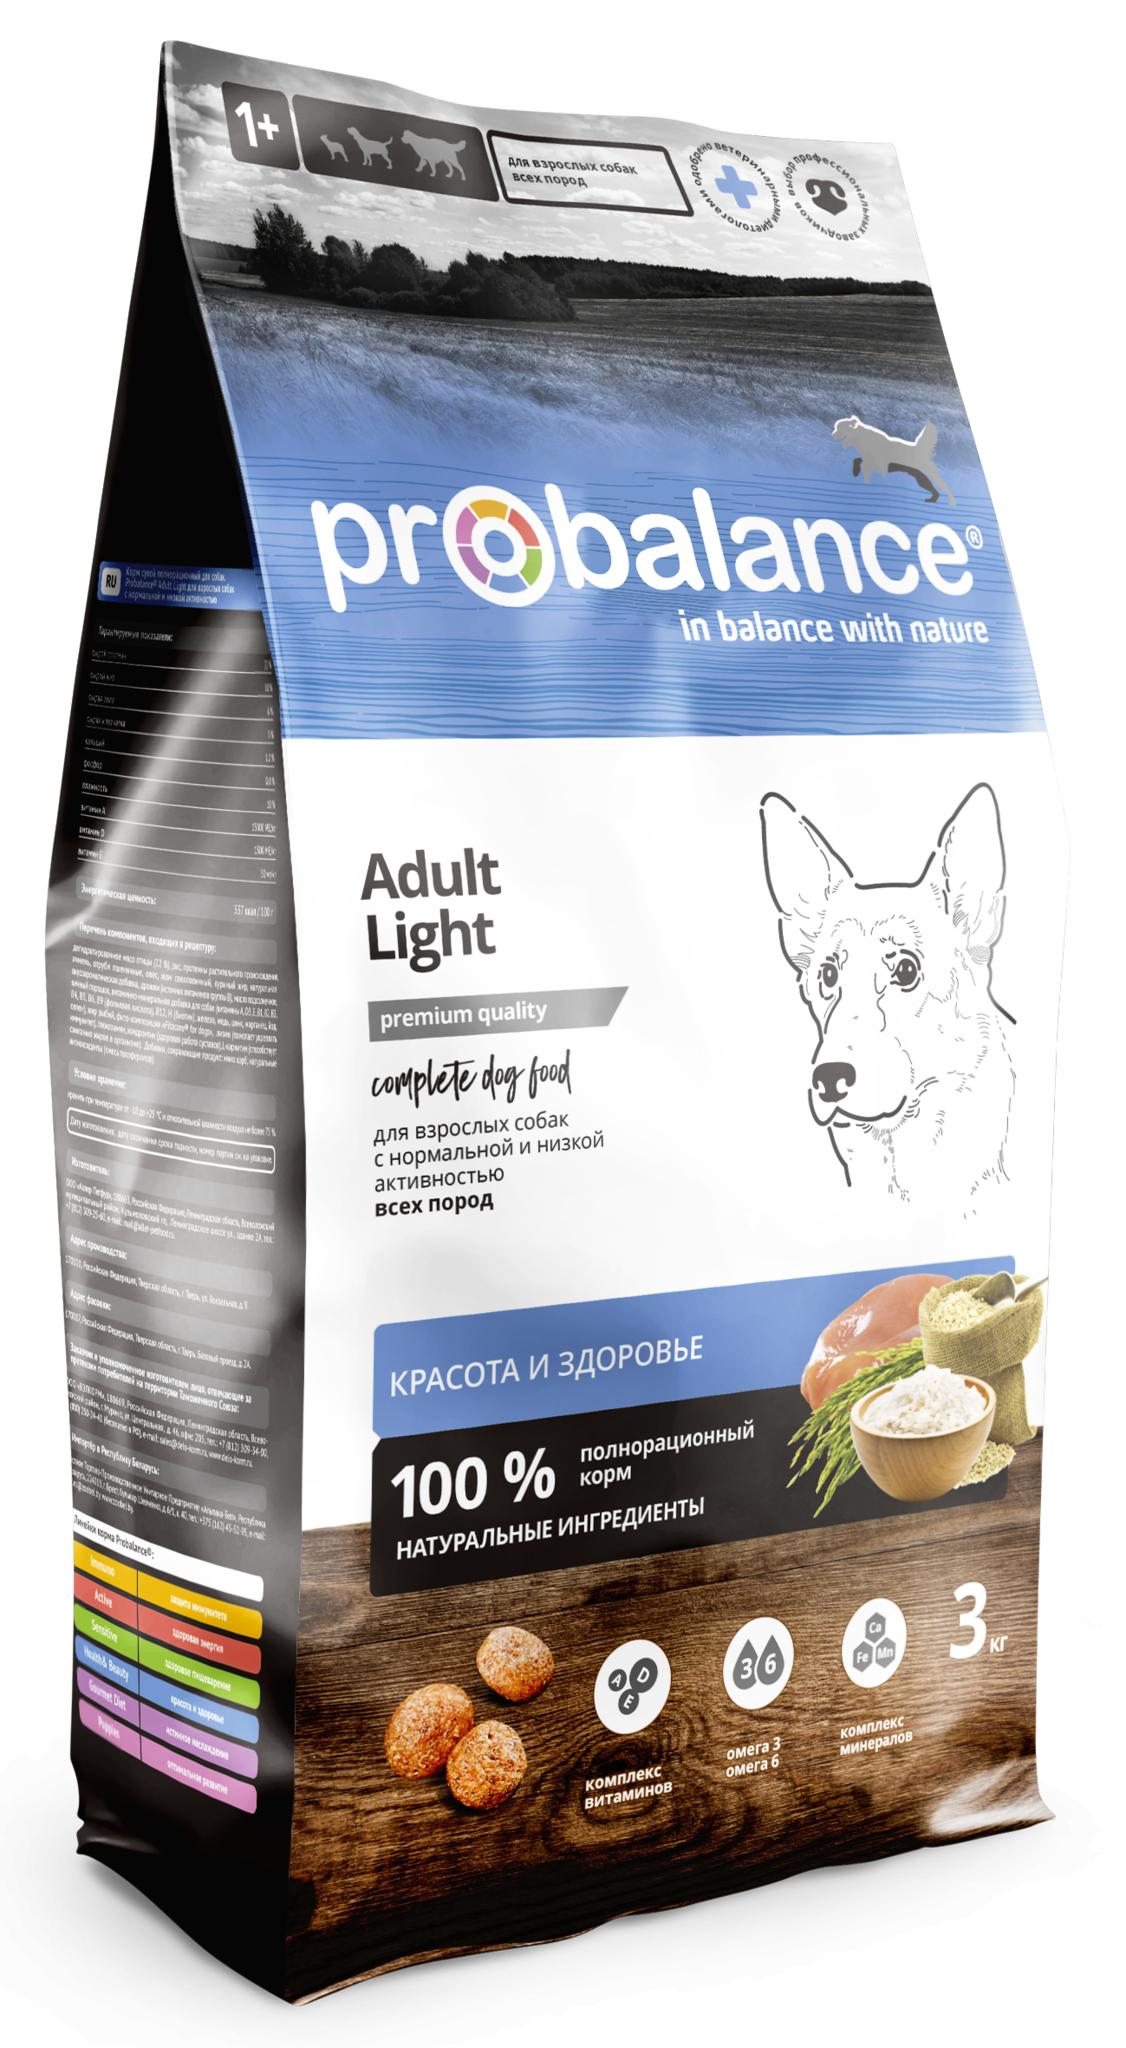 Probalance Сухой корм для собак всех пород с нормальной и низкой активностью красота и здоровье 44 PB 261 3 кг 54870